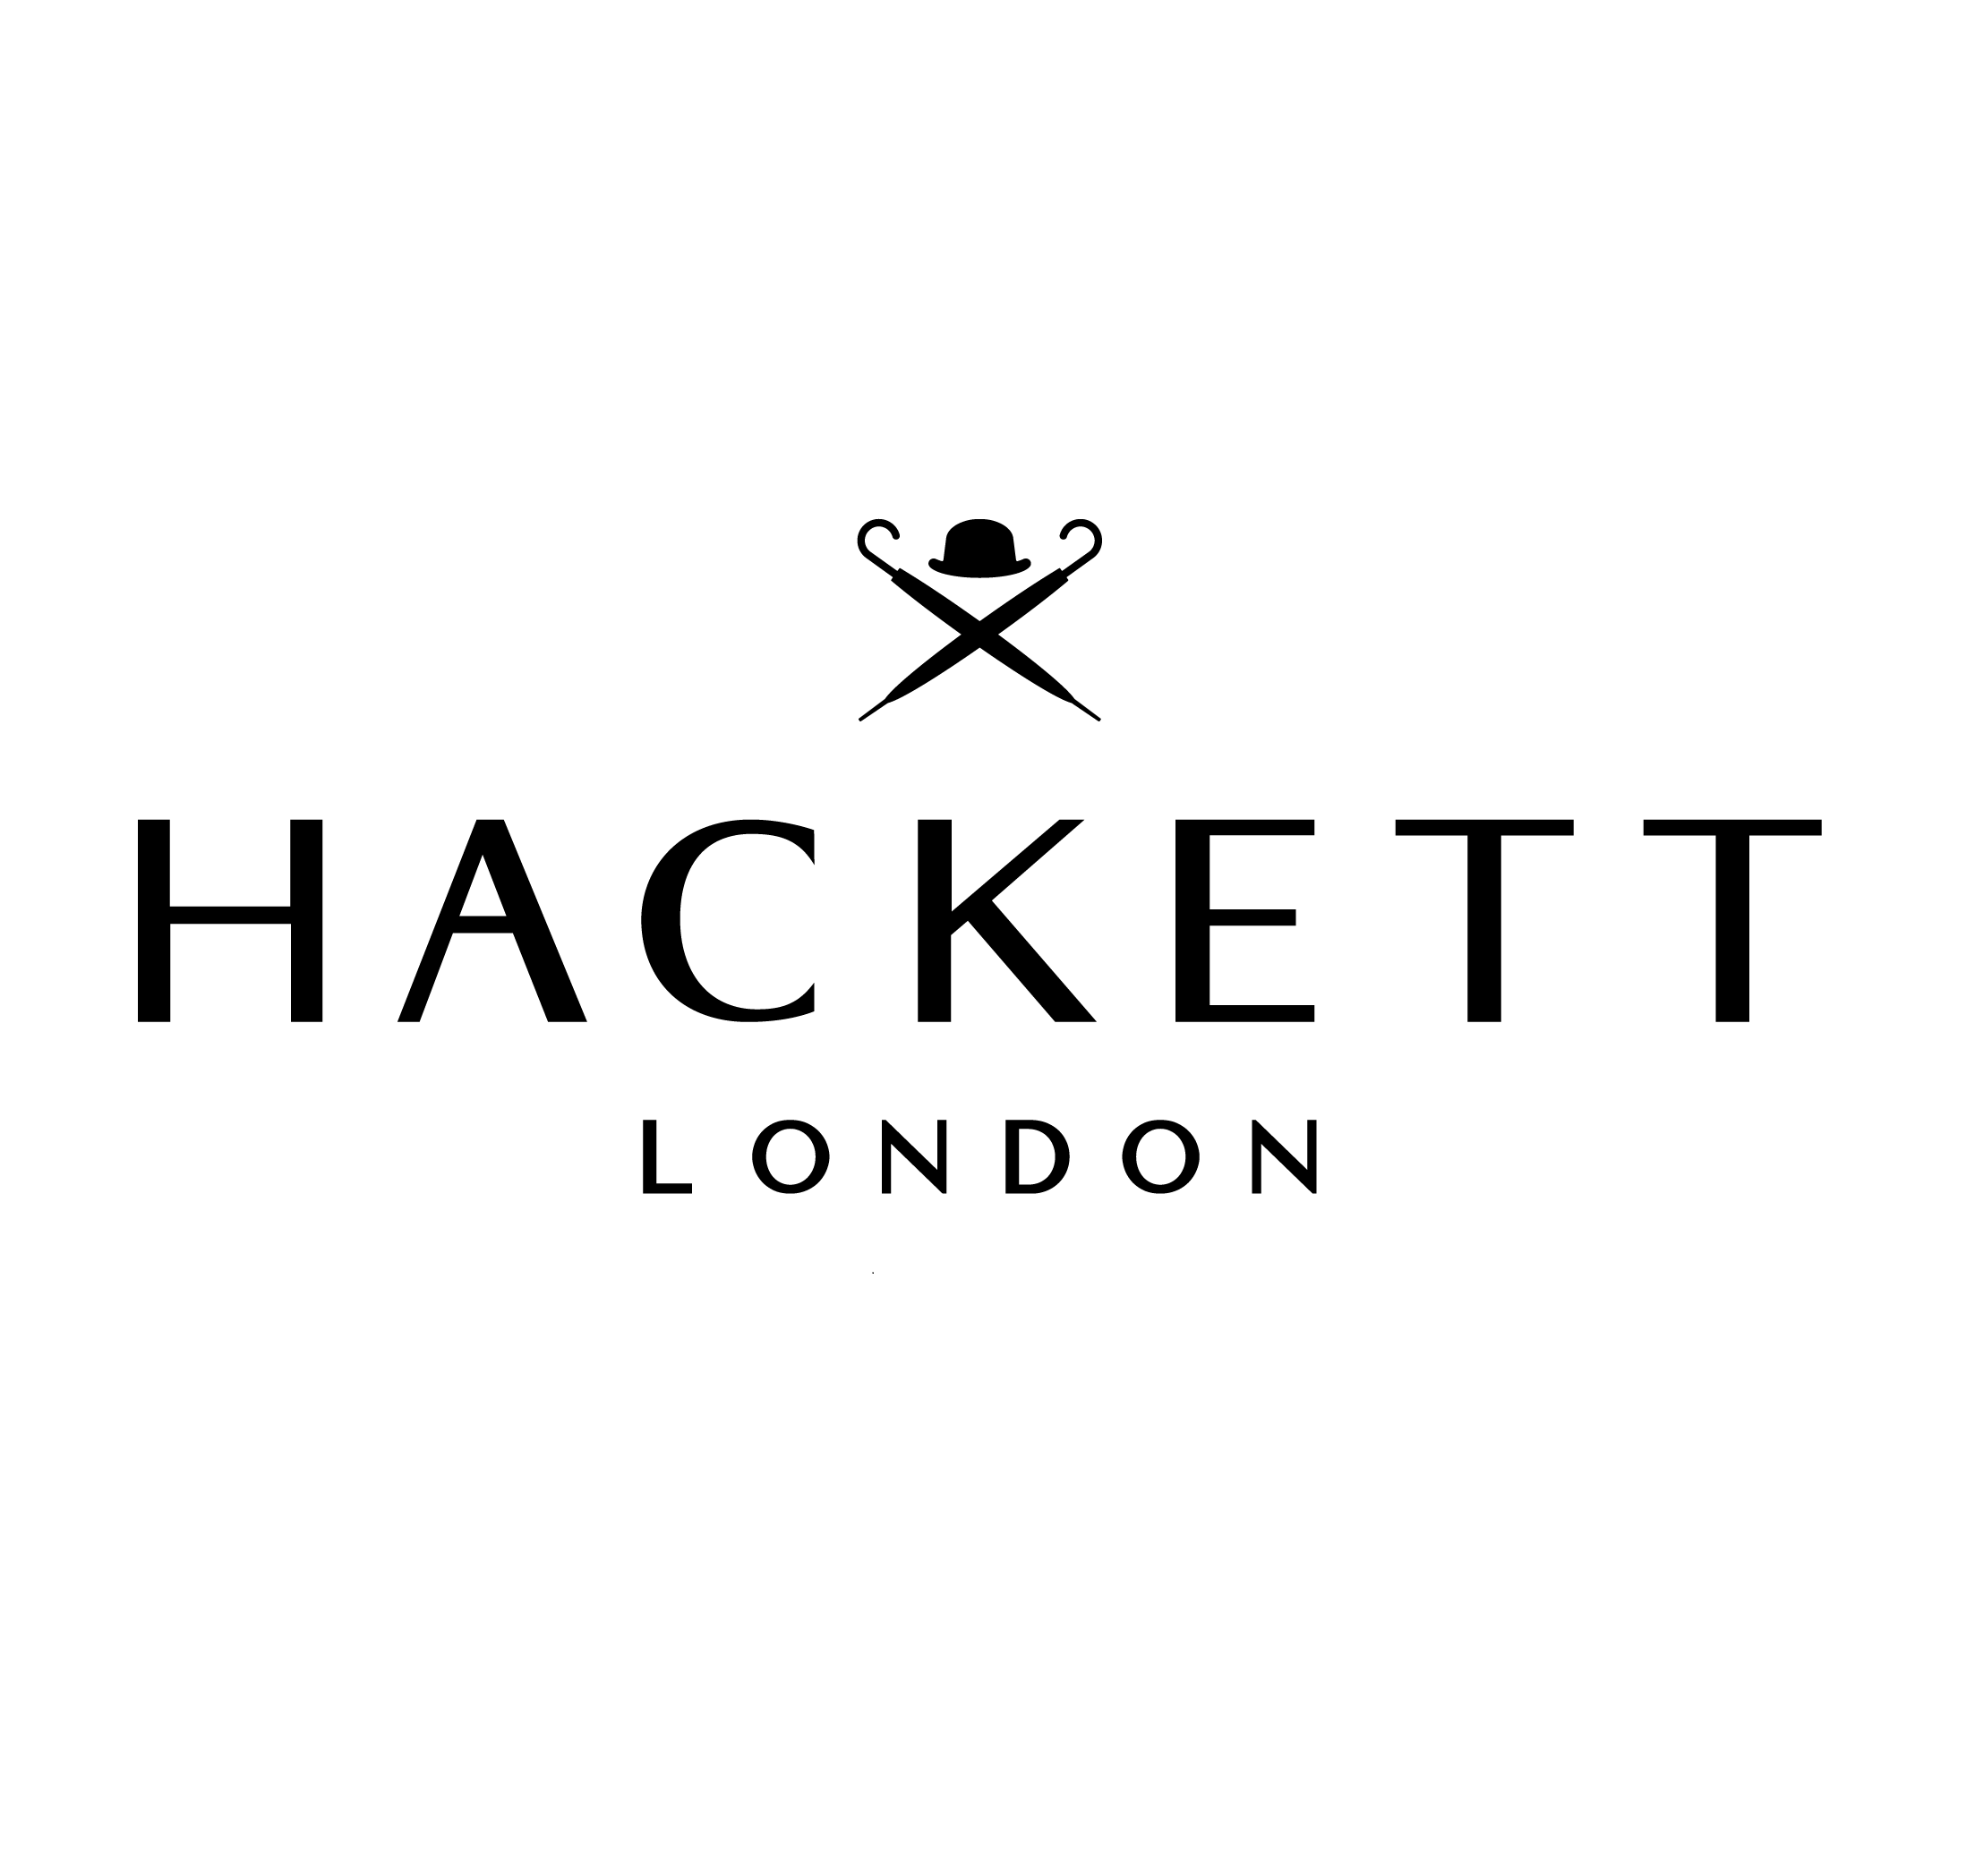 Hackett London Punta Cana